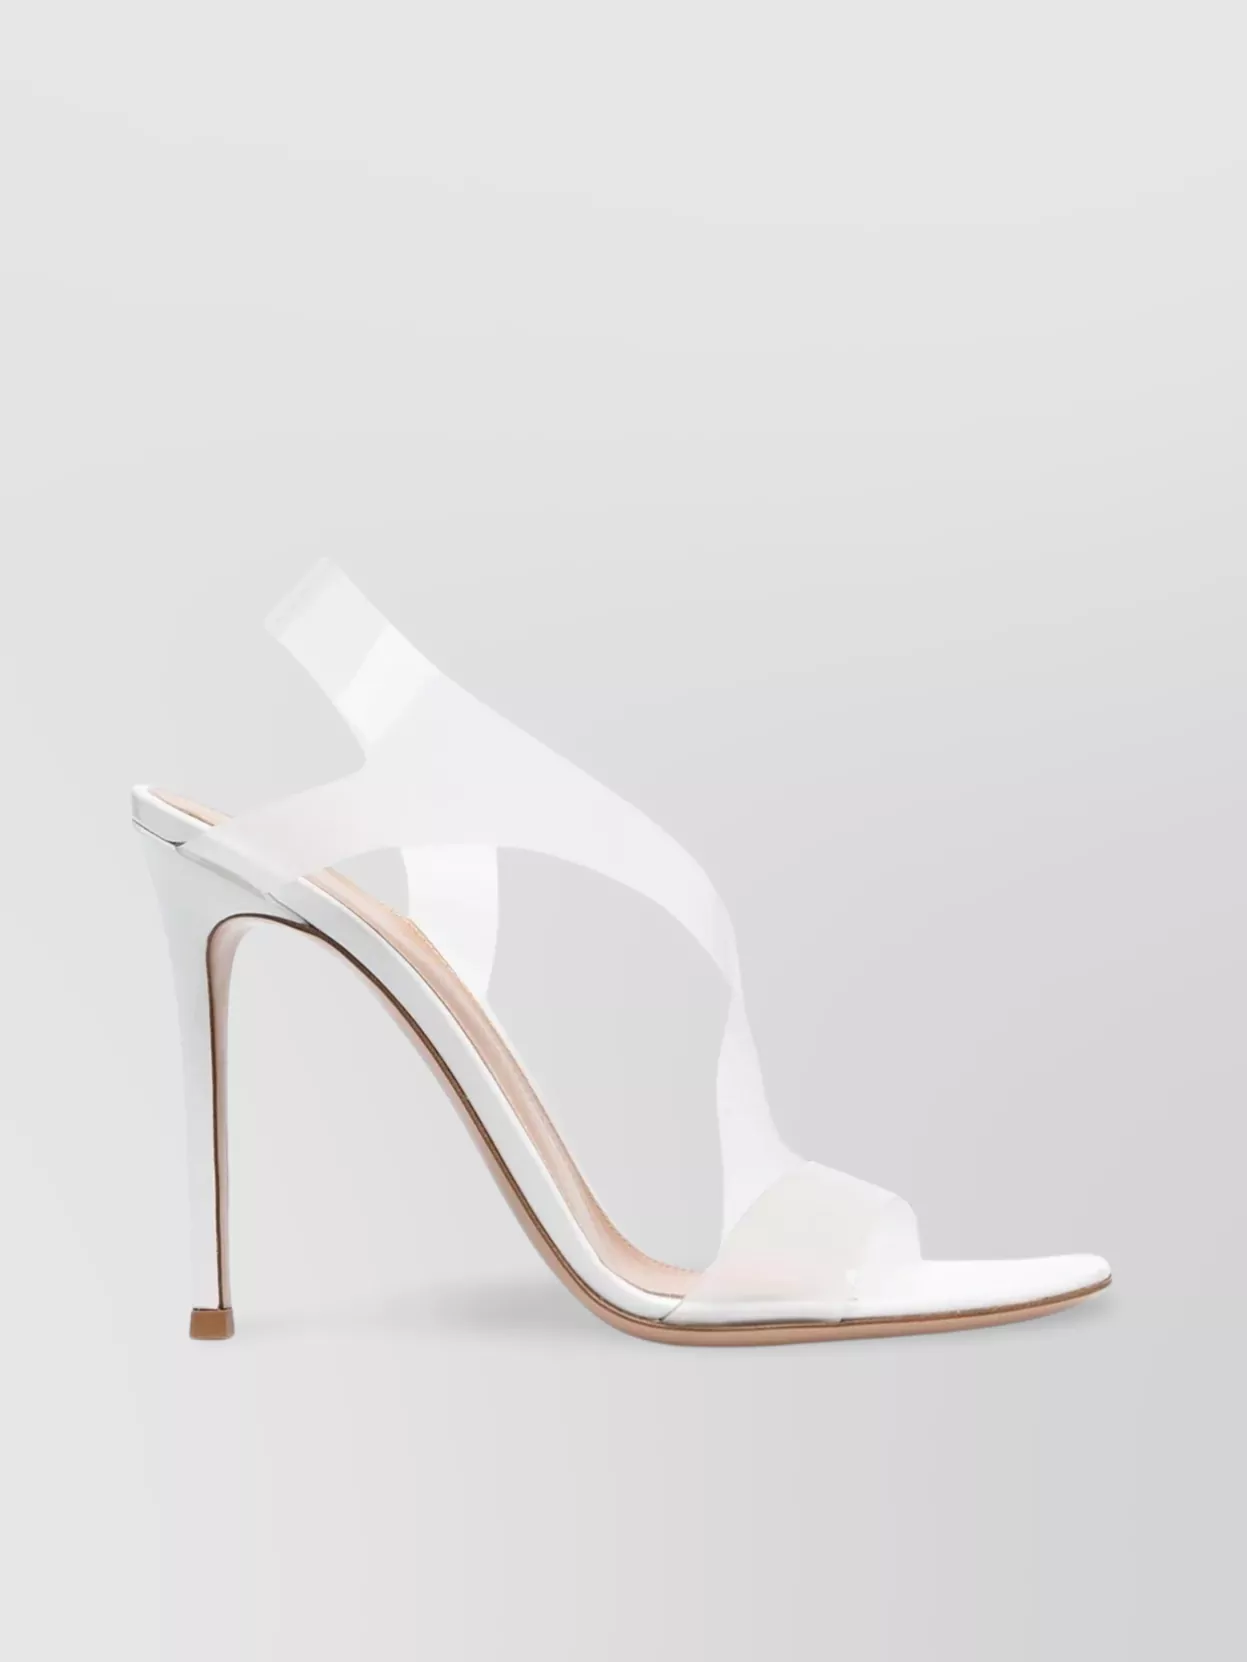 Shop Gianvito Rossi Leather Stiletto Sandals With Plexi Straps In White